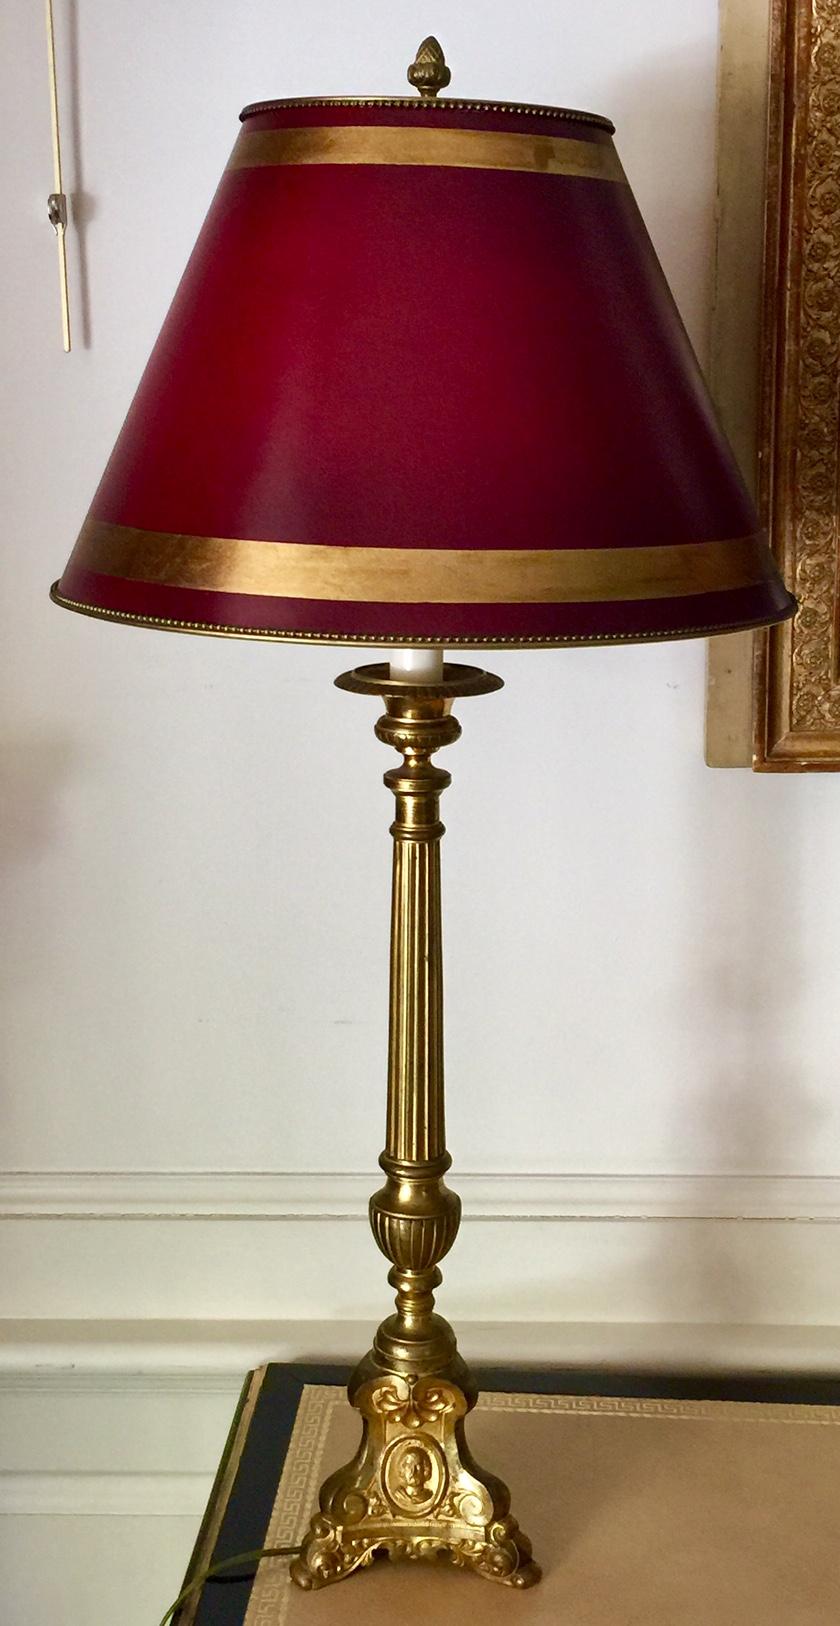 burgandy lamp